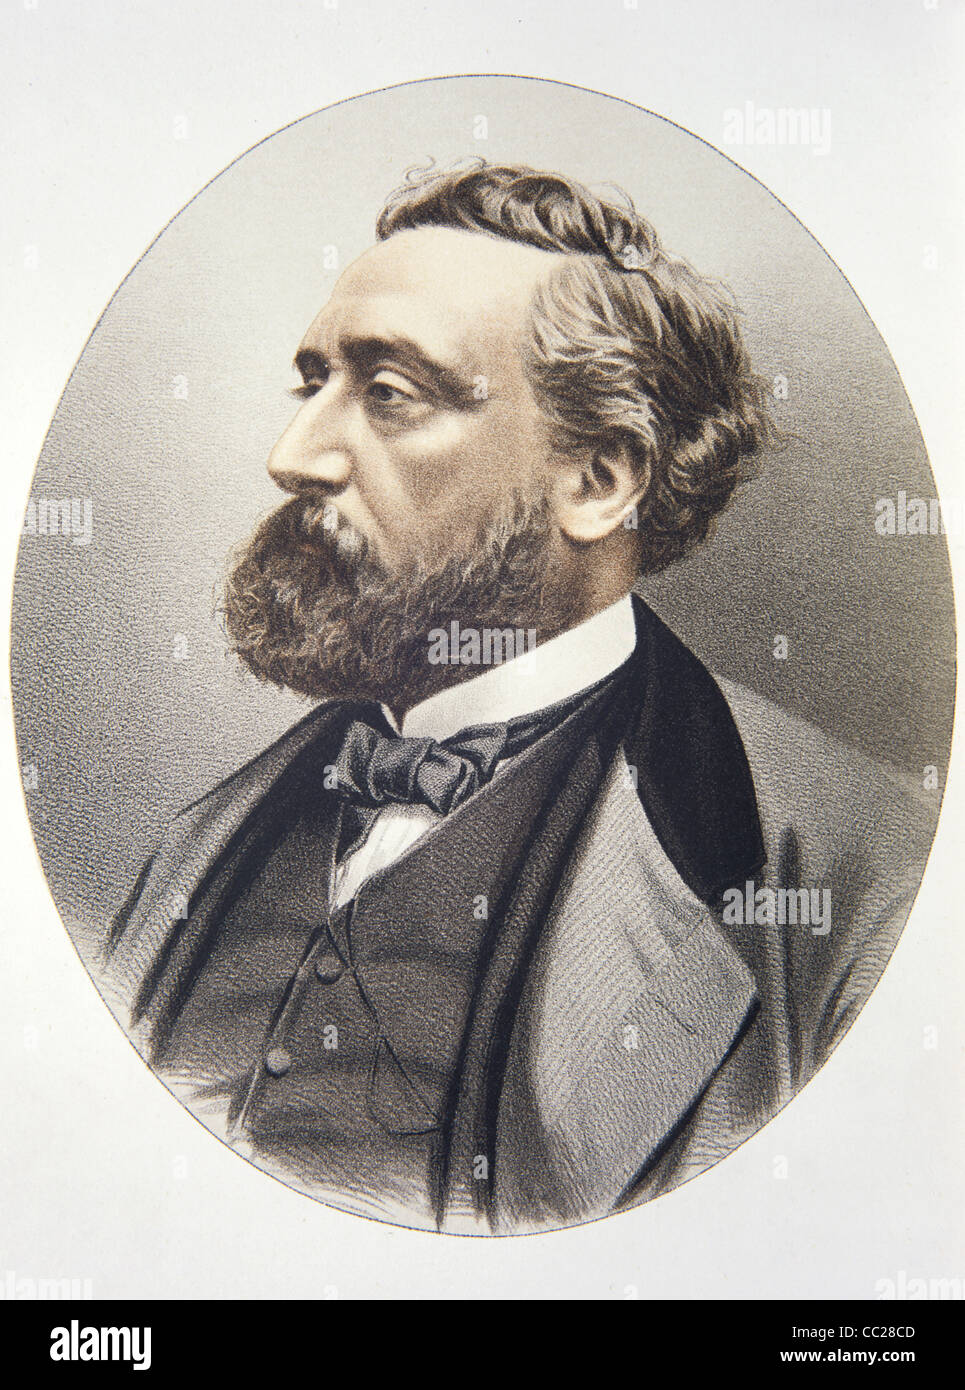 Retrato de Léon Gambetta (1838-1882) Abogado francés, político y estadista  que desempeñó un papel destacado en la formación de la Tercera República.  Ilustración Vintage o Grabado Fotografía de stock - Alamy